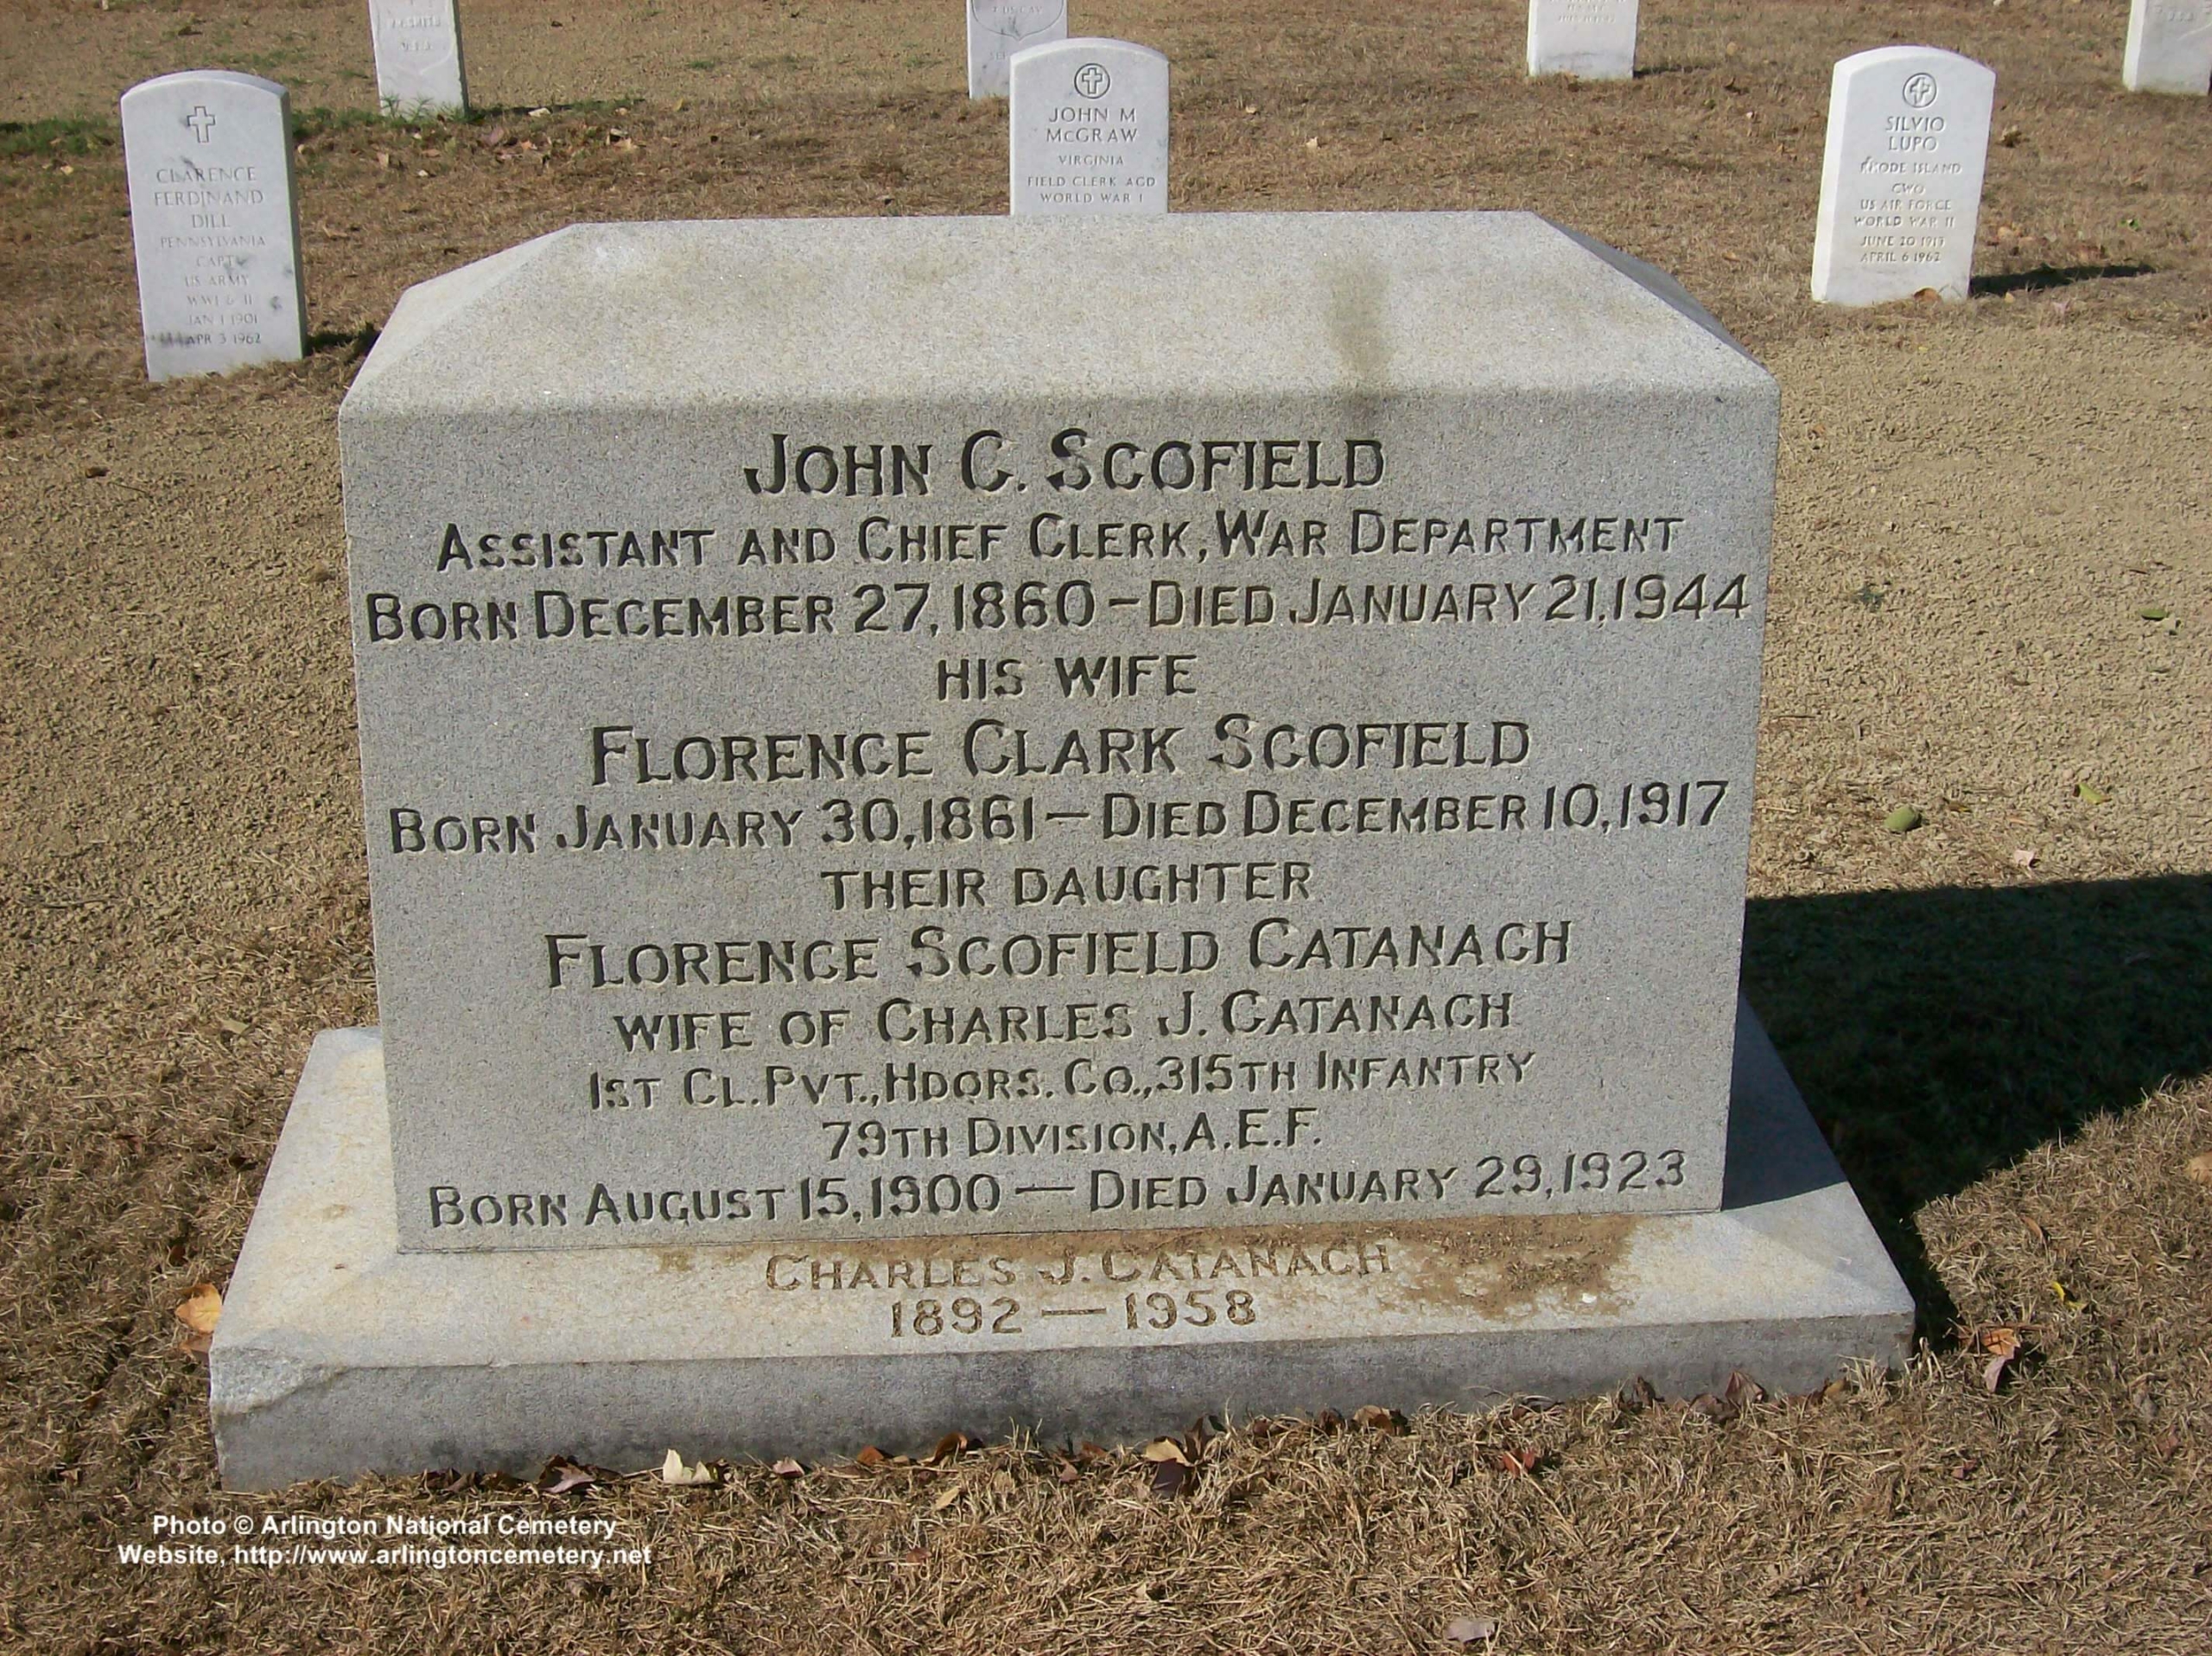 jcscofield-gravesite-photo-october-2007-001